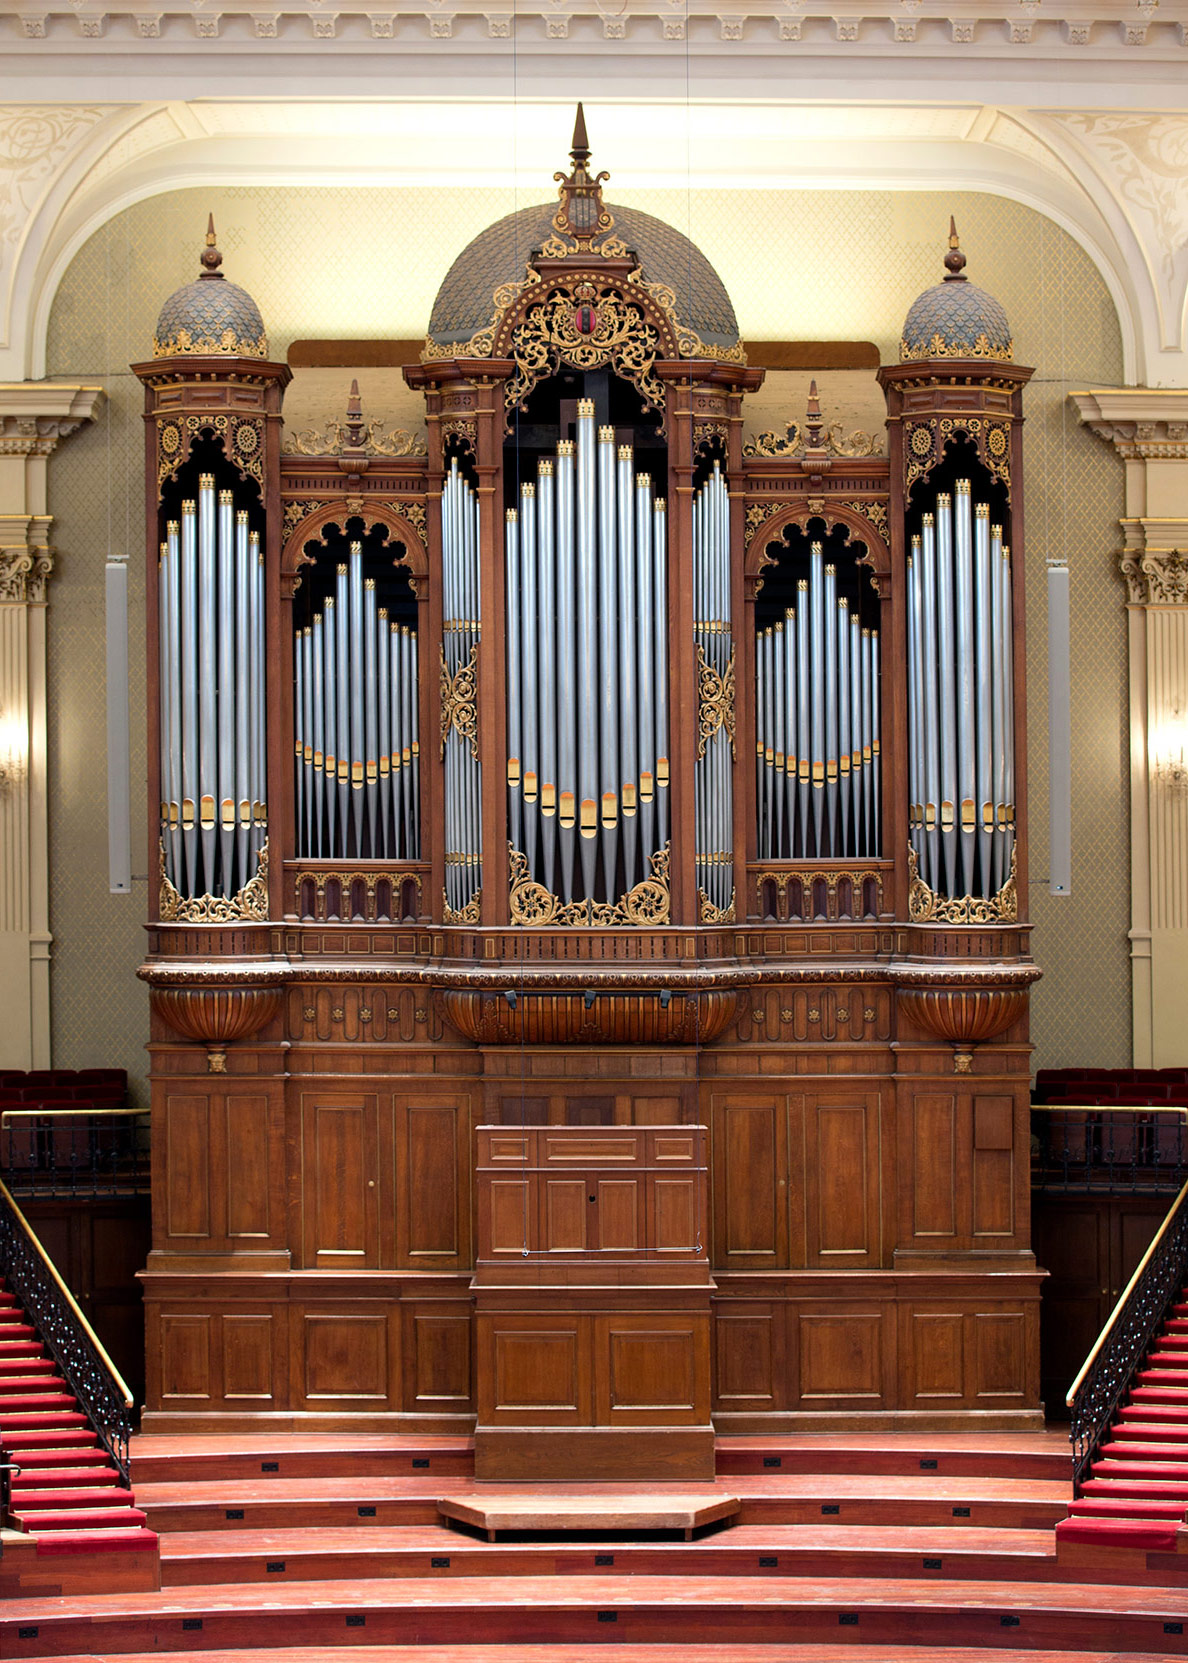 Maarschalkerweern-organ, built in 1890